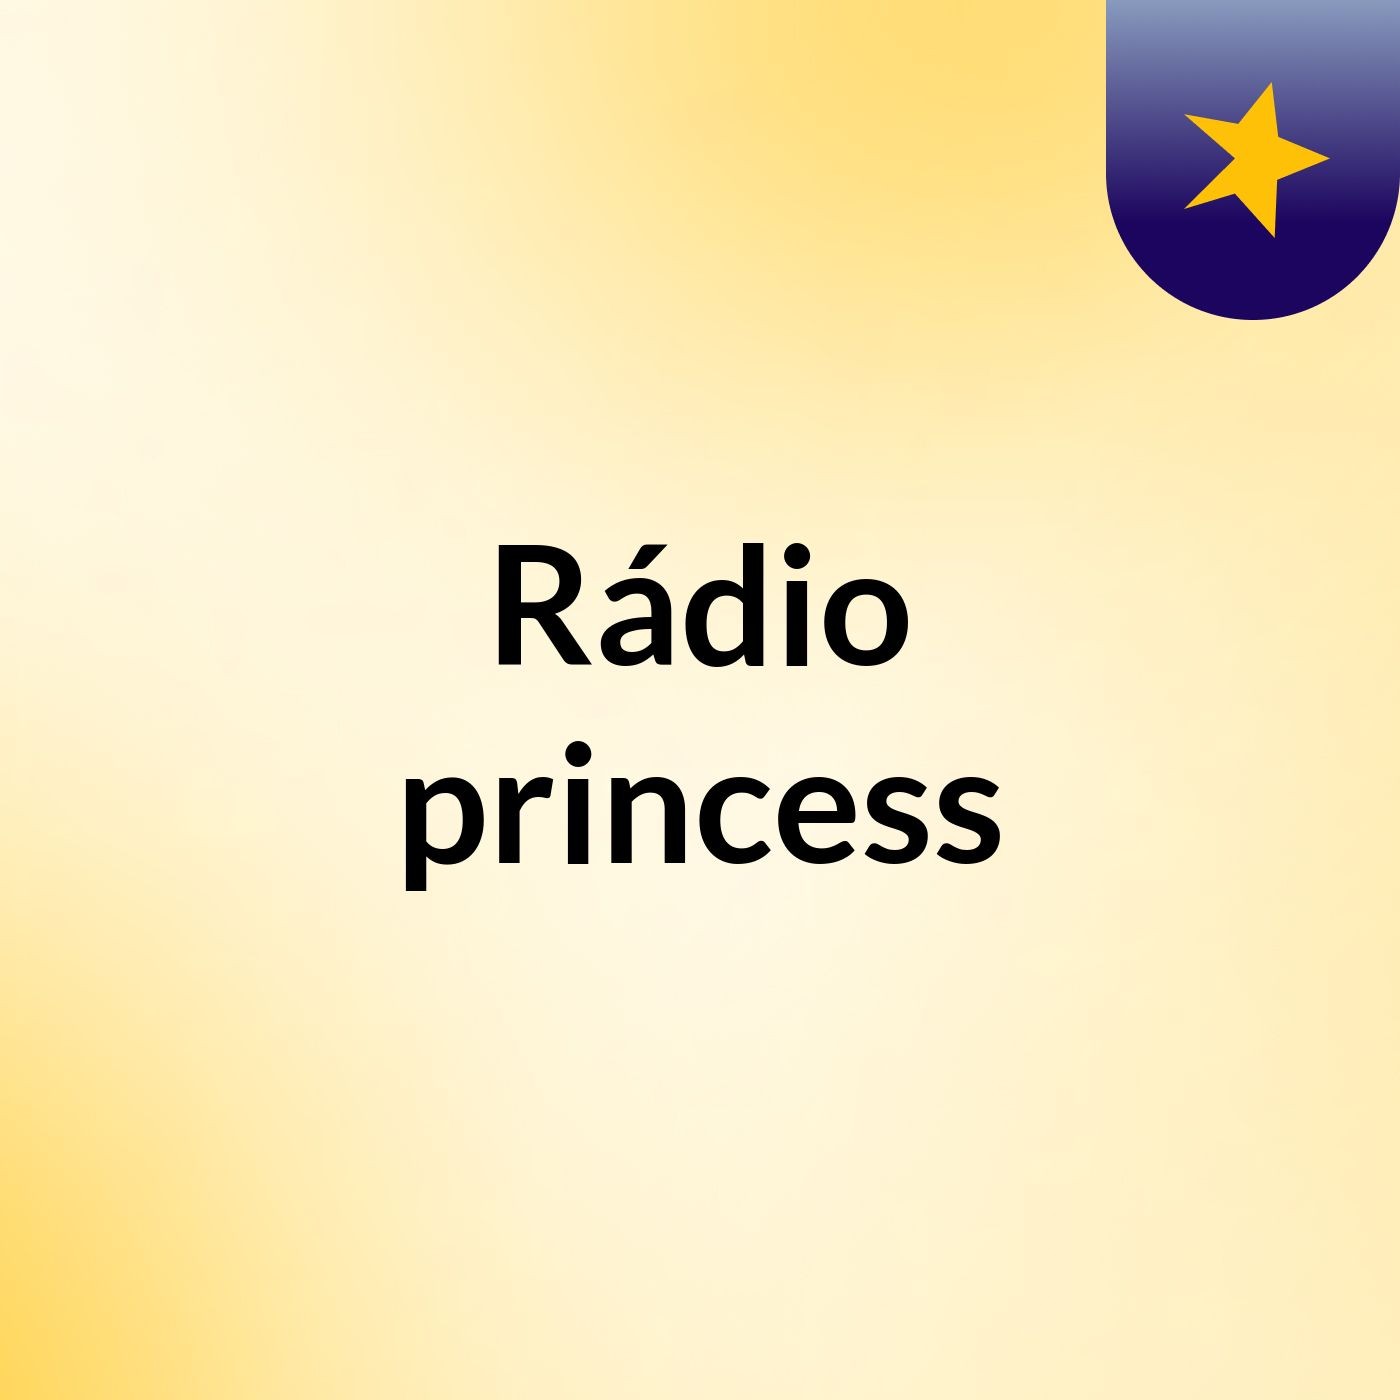 Rádio princess